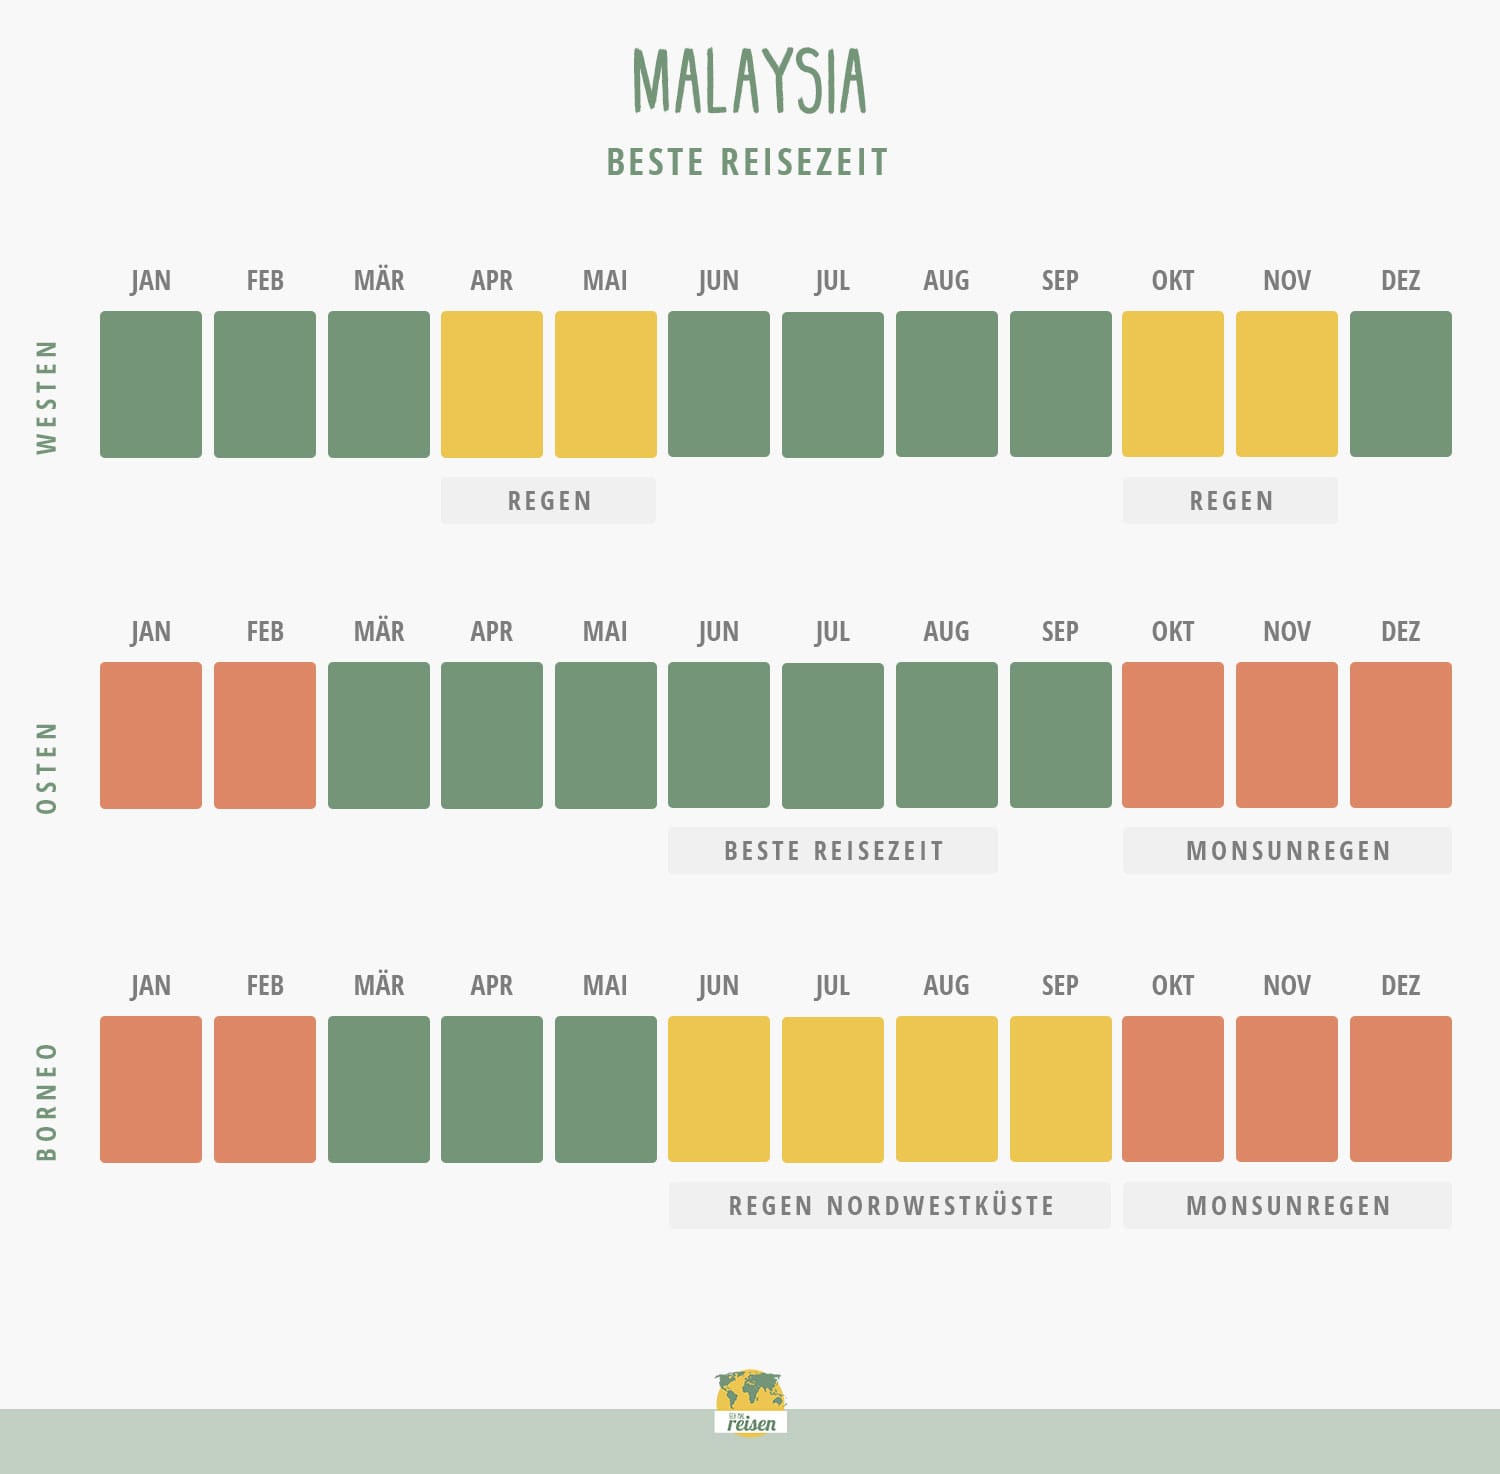 Malaysia: Beste Reisezeit in einer Tabelle